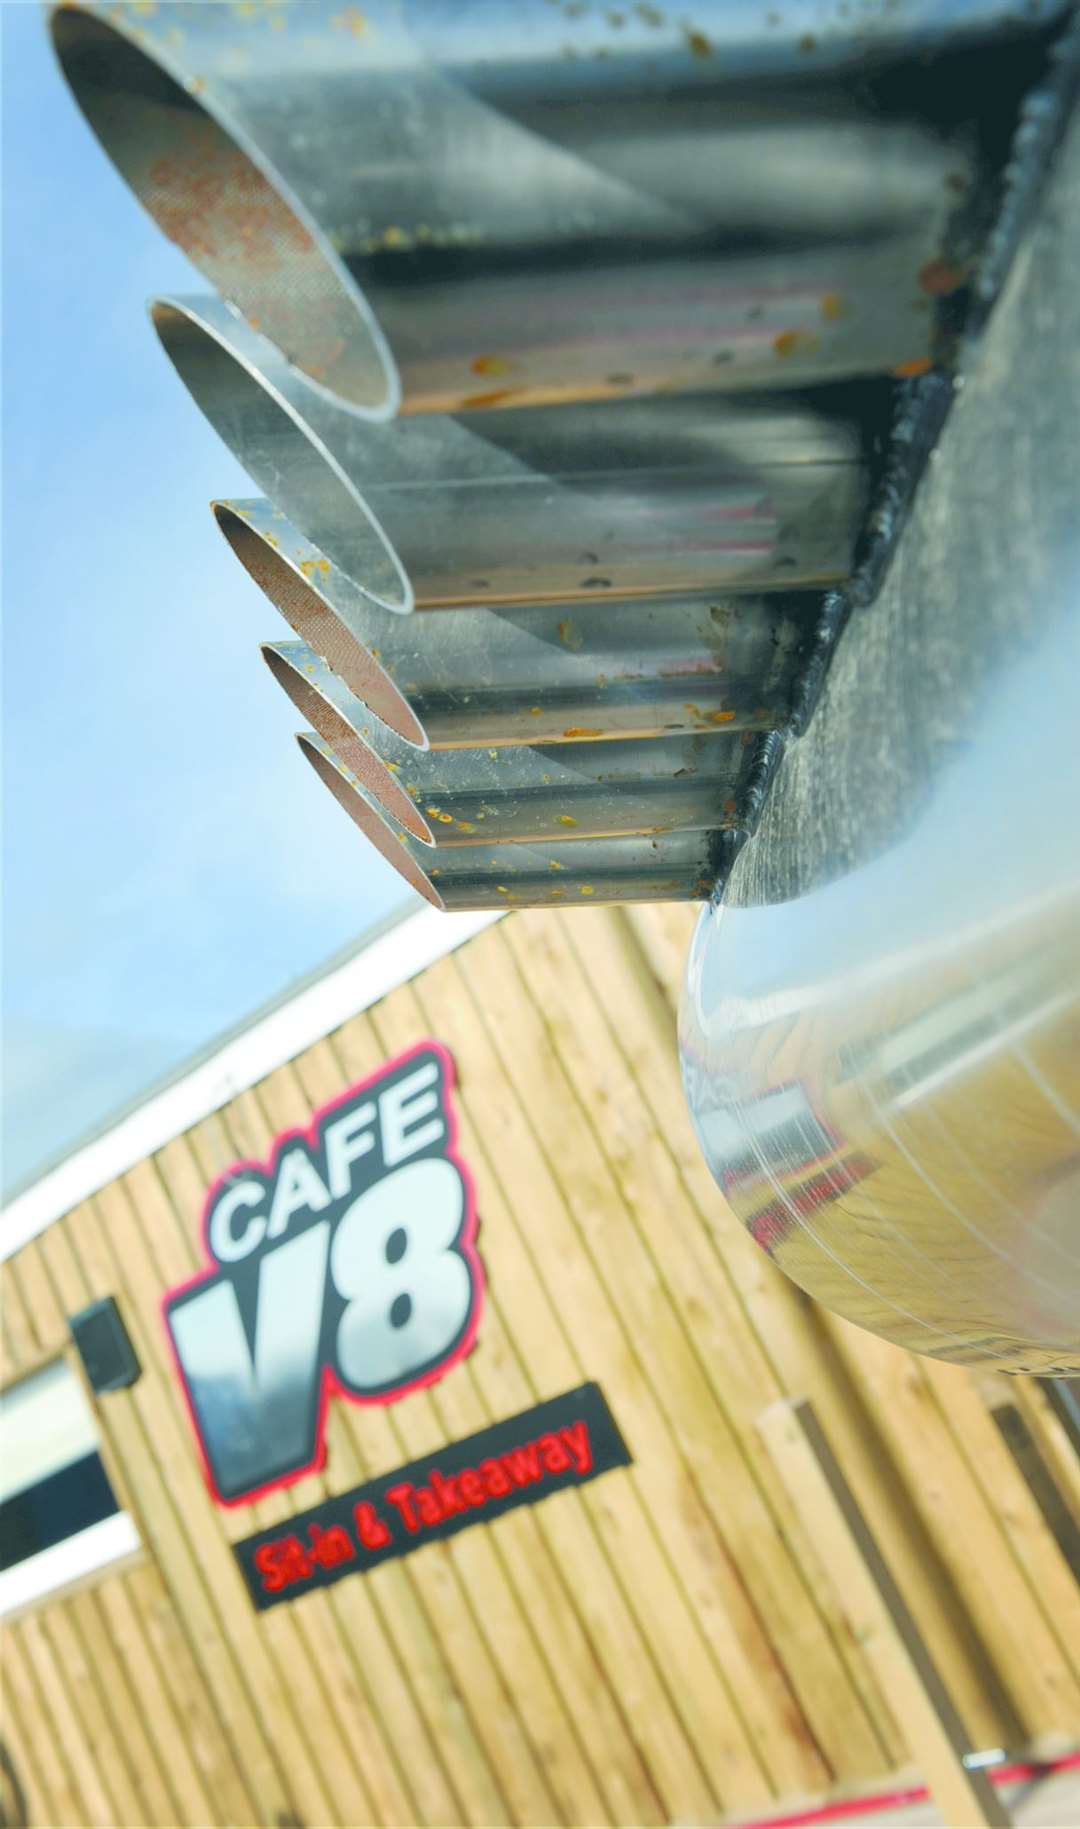 Café V8. Picture: Gary Anthony